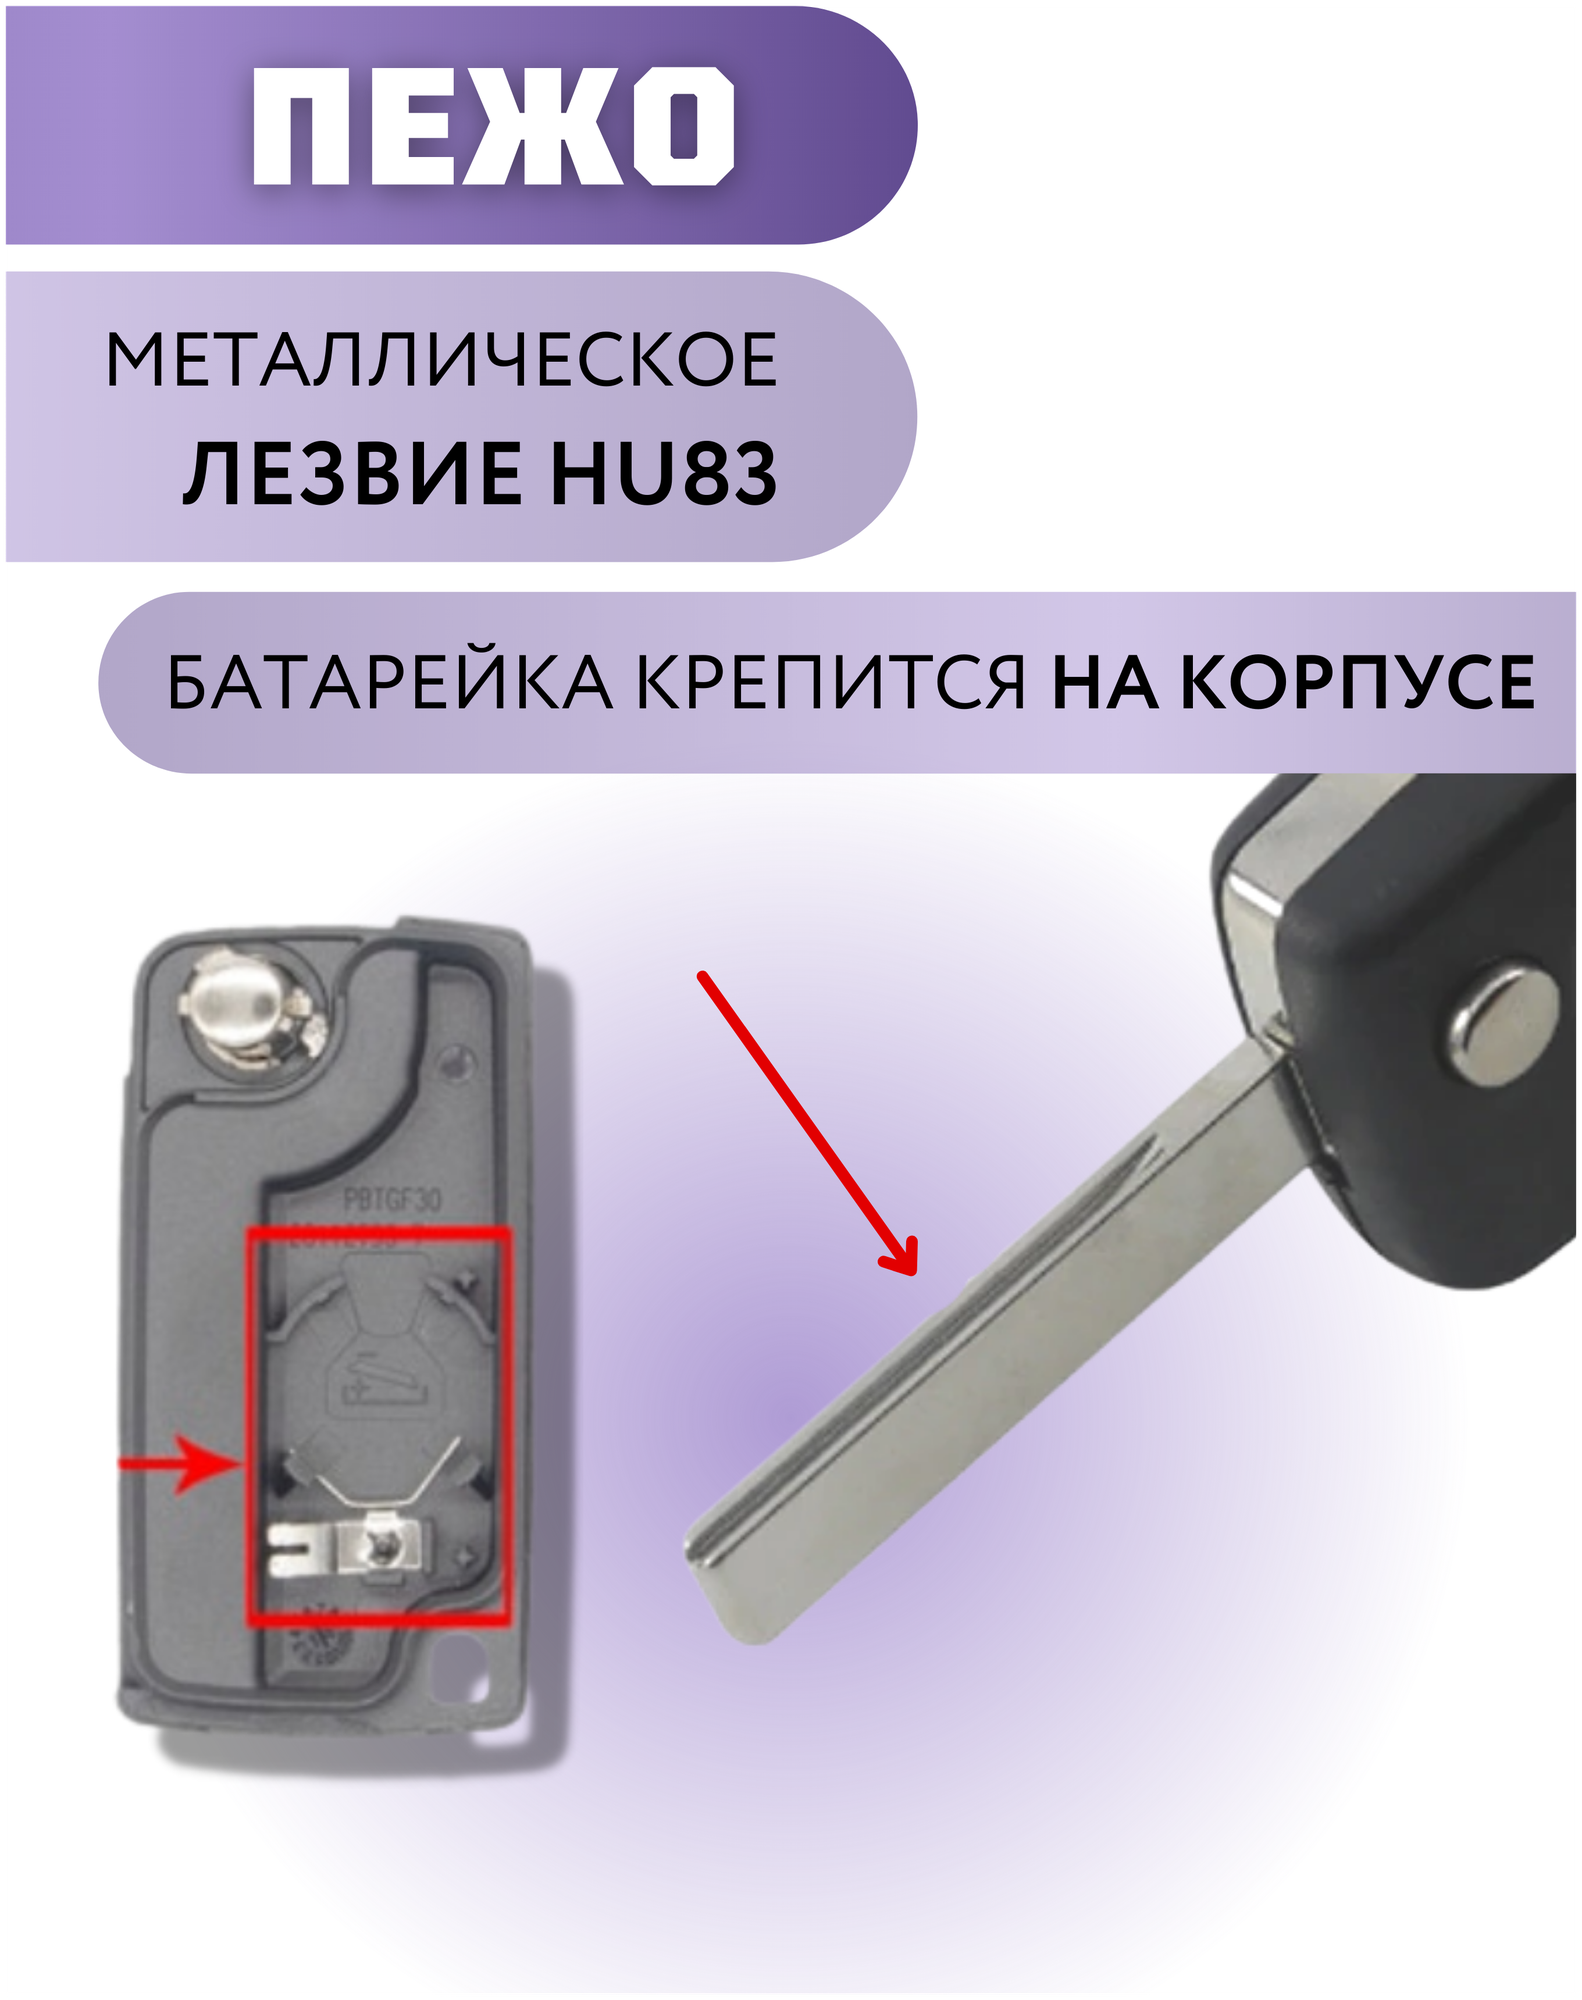 Корпус ключа зажигания для Пежо корпус ключа для Peugeot 2 кнопки батарейка на корпусе лезвие HU83